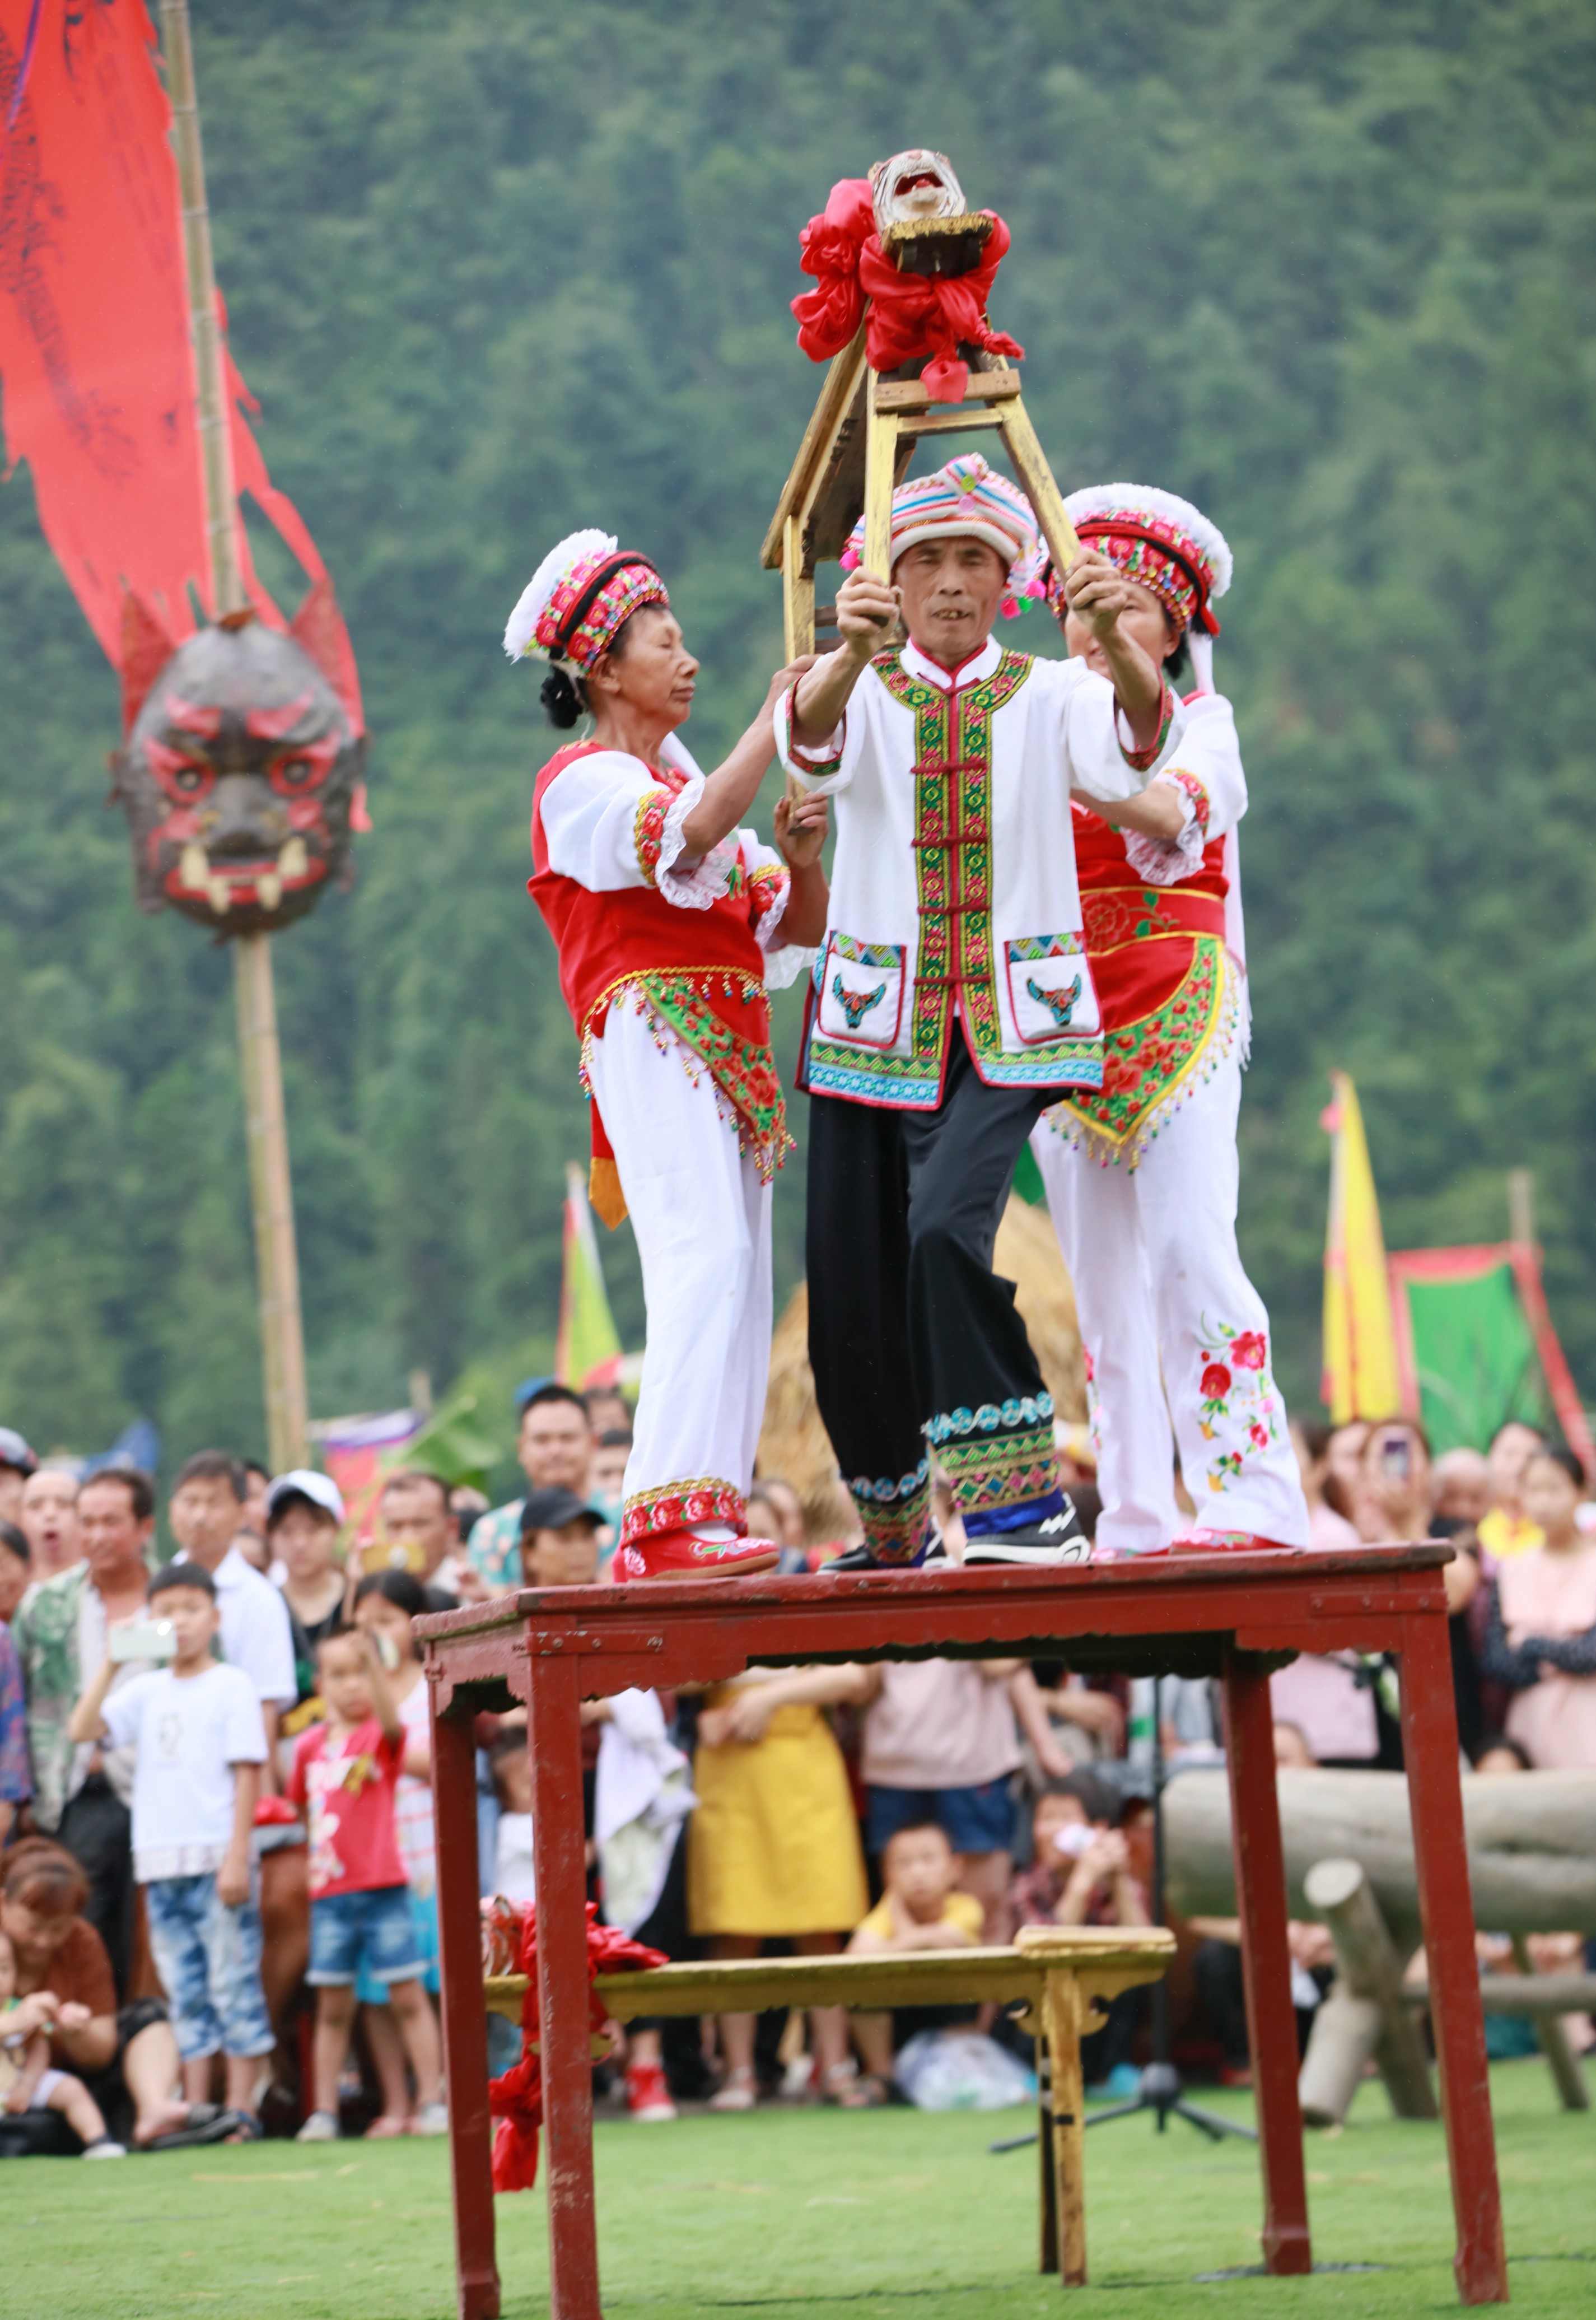 当日是农历六月初六,贵州省黔东南苗族侗族自治州剑河县群众载歌载舞